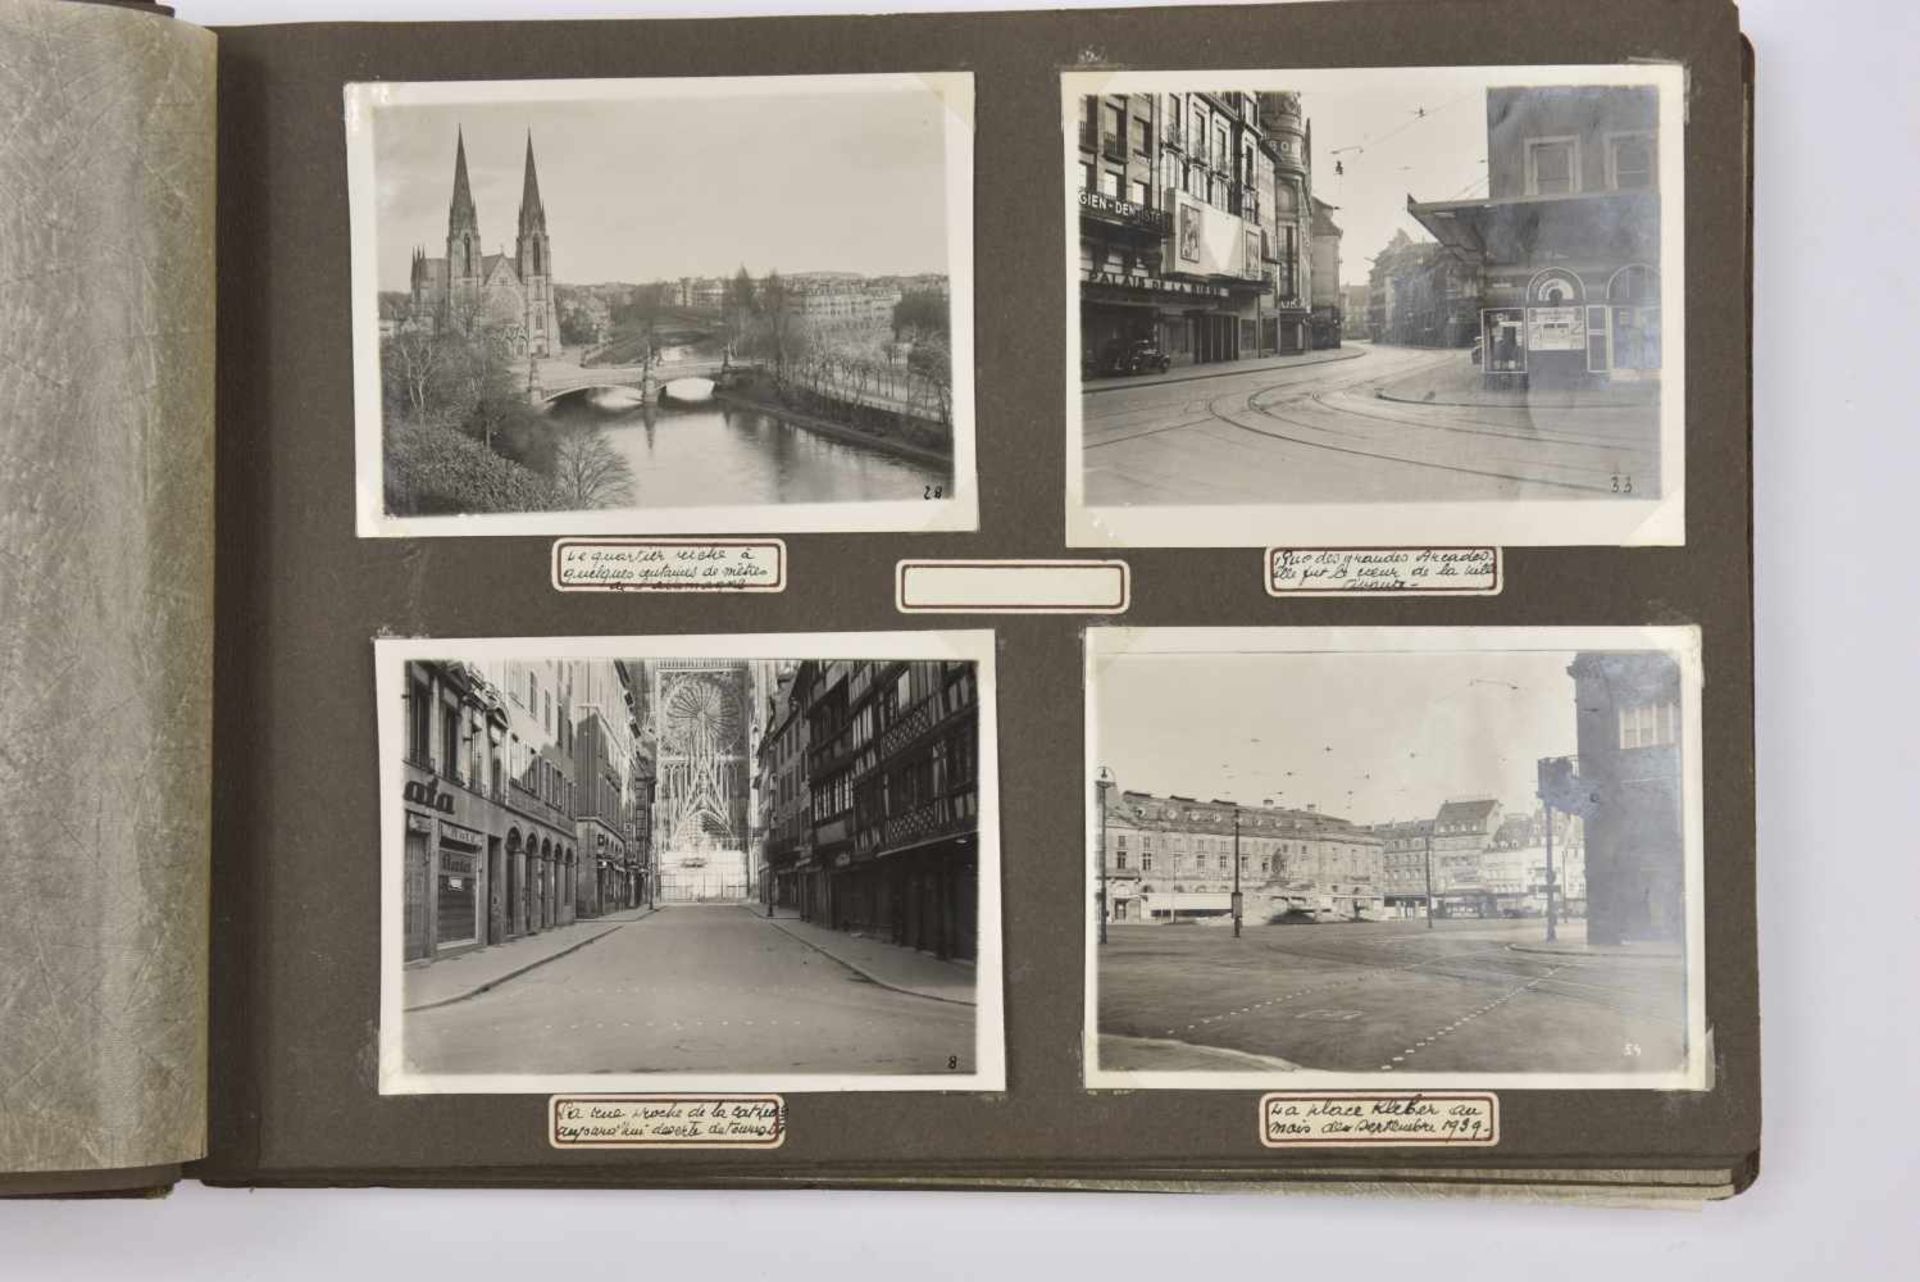 Strasbourg pendant la drôle de guerre Album photos (69 clichés et deux cartes postales) concernant